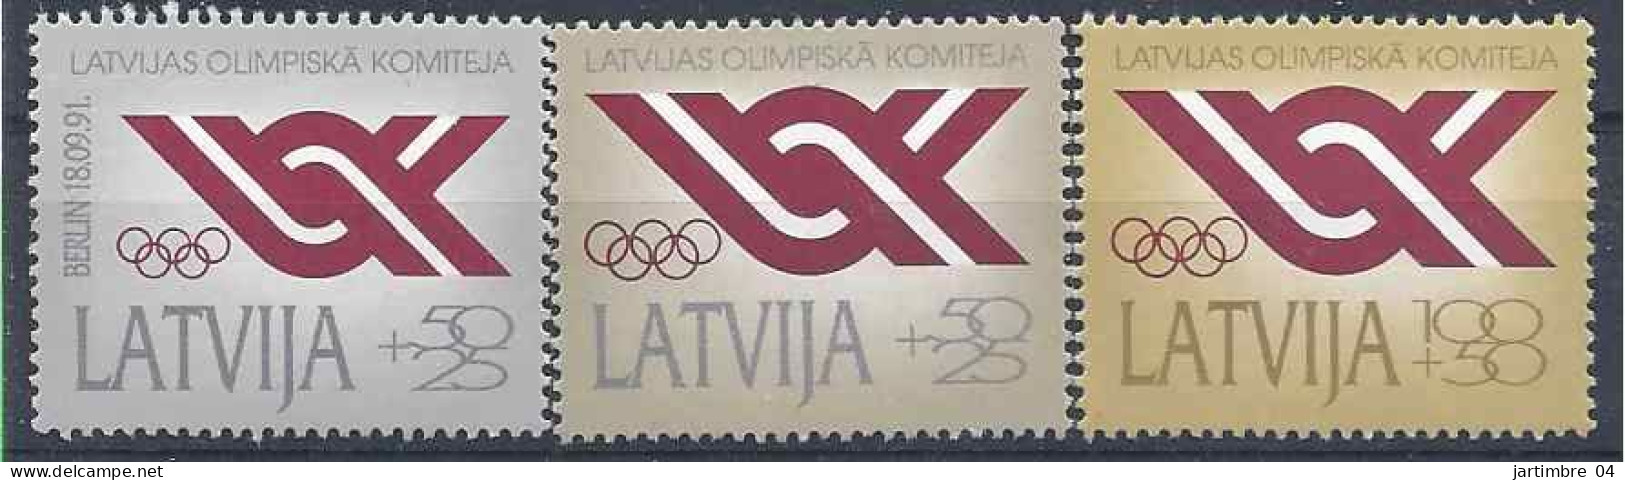 1991 LETTONIE 283-85** Comité Olympique - Letland